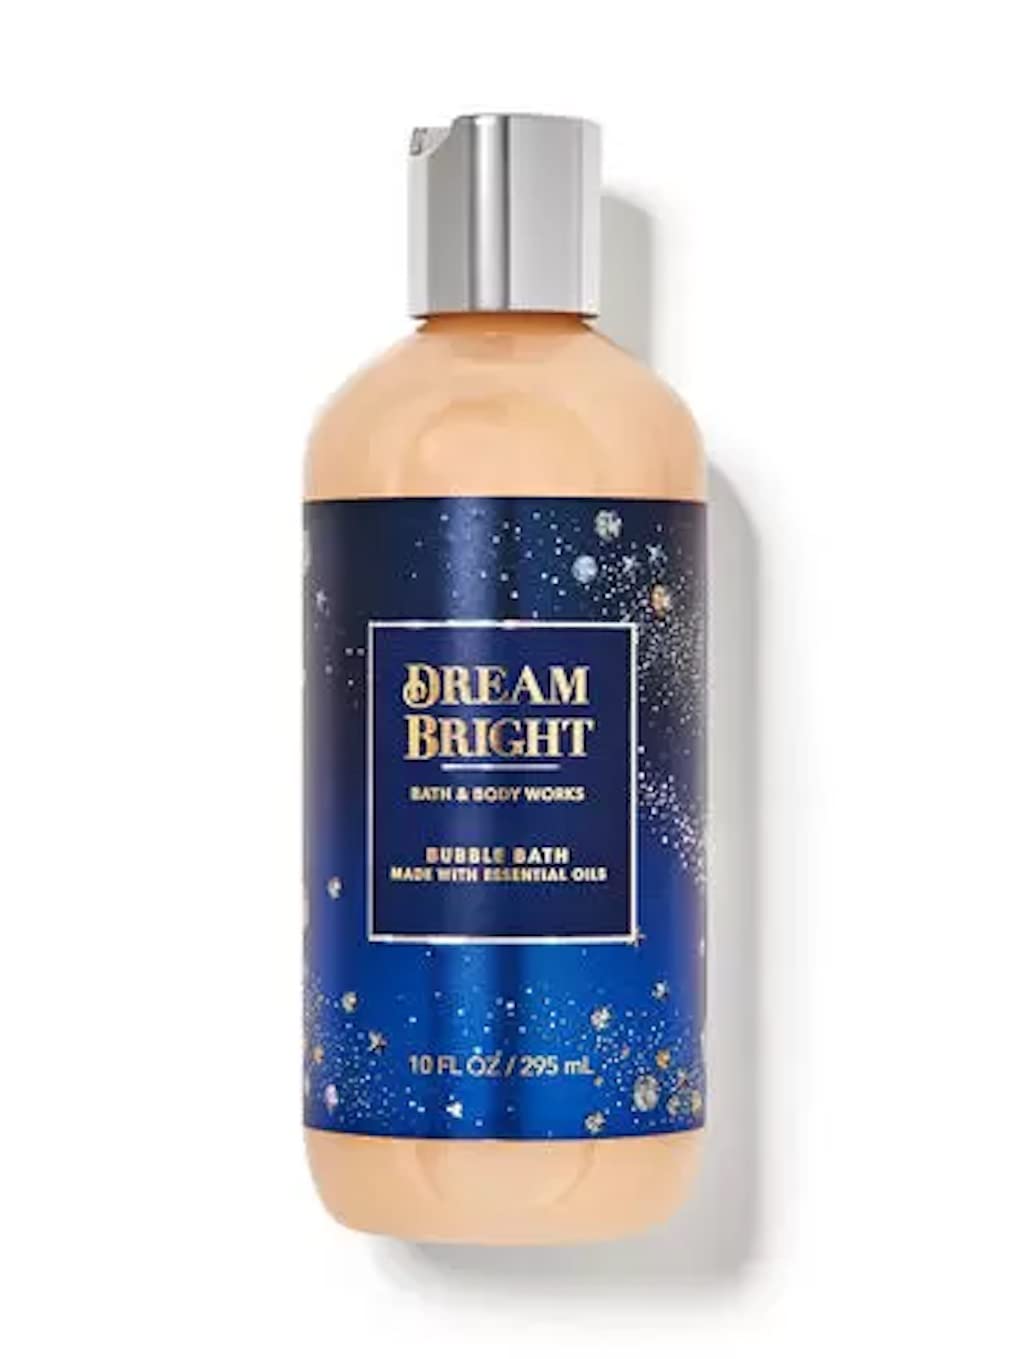 Bath & Body Works Dream Bright Bubble Bath with Shea and Cocoa Butter 10 fl oz / 295 mL (Dream Bright), No. of items:1